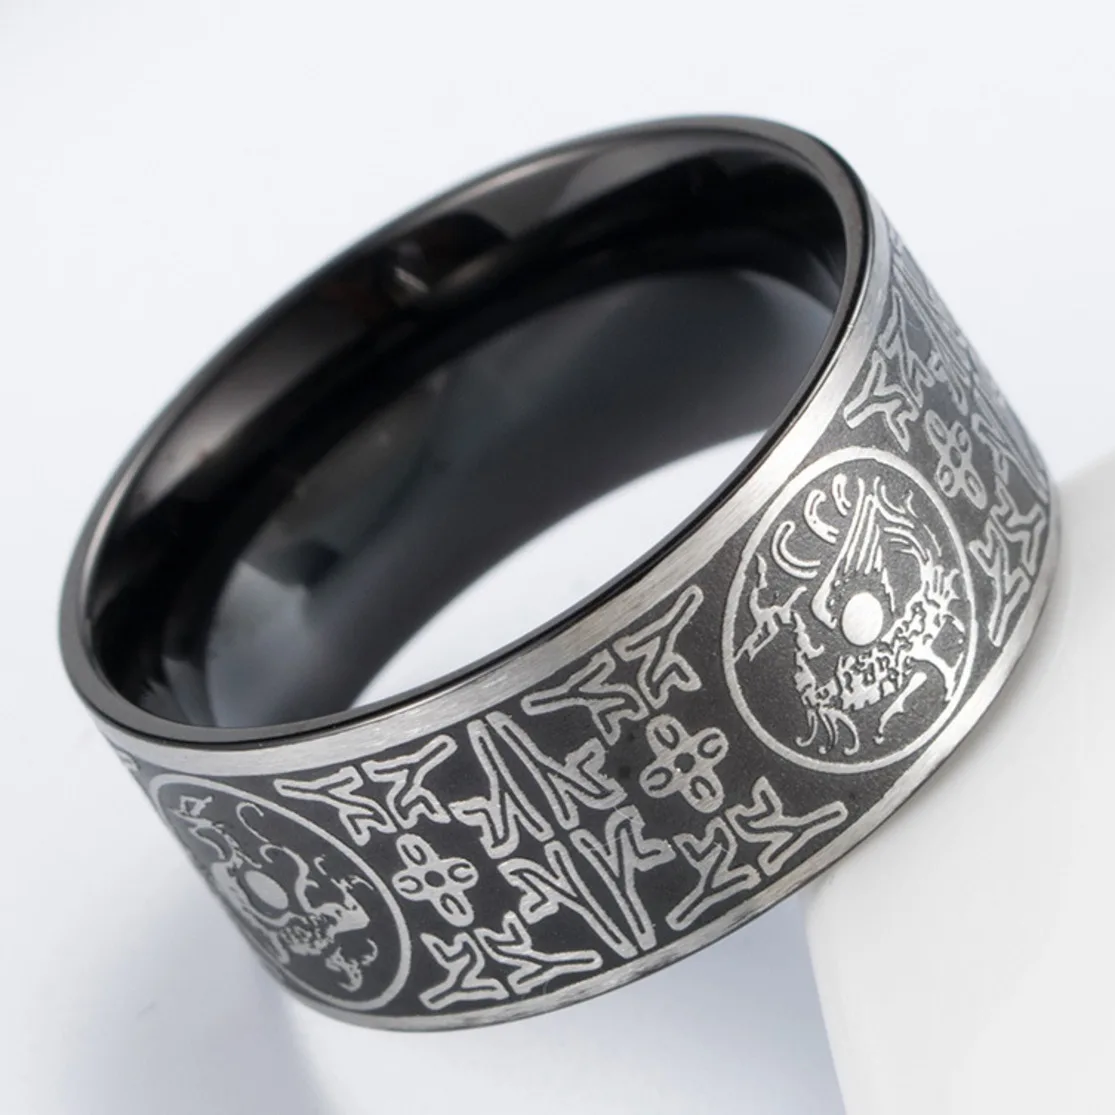 FntYcm, нордическая Руна Викинга, мужское кольцо из нержавеющей стали, древние звери-хранители, кольцо, дракон, белый тигр, резные свадебные кольца